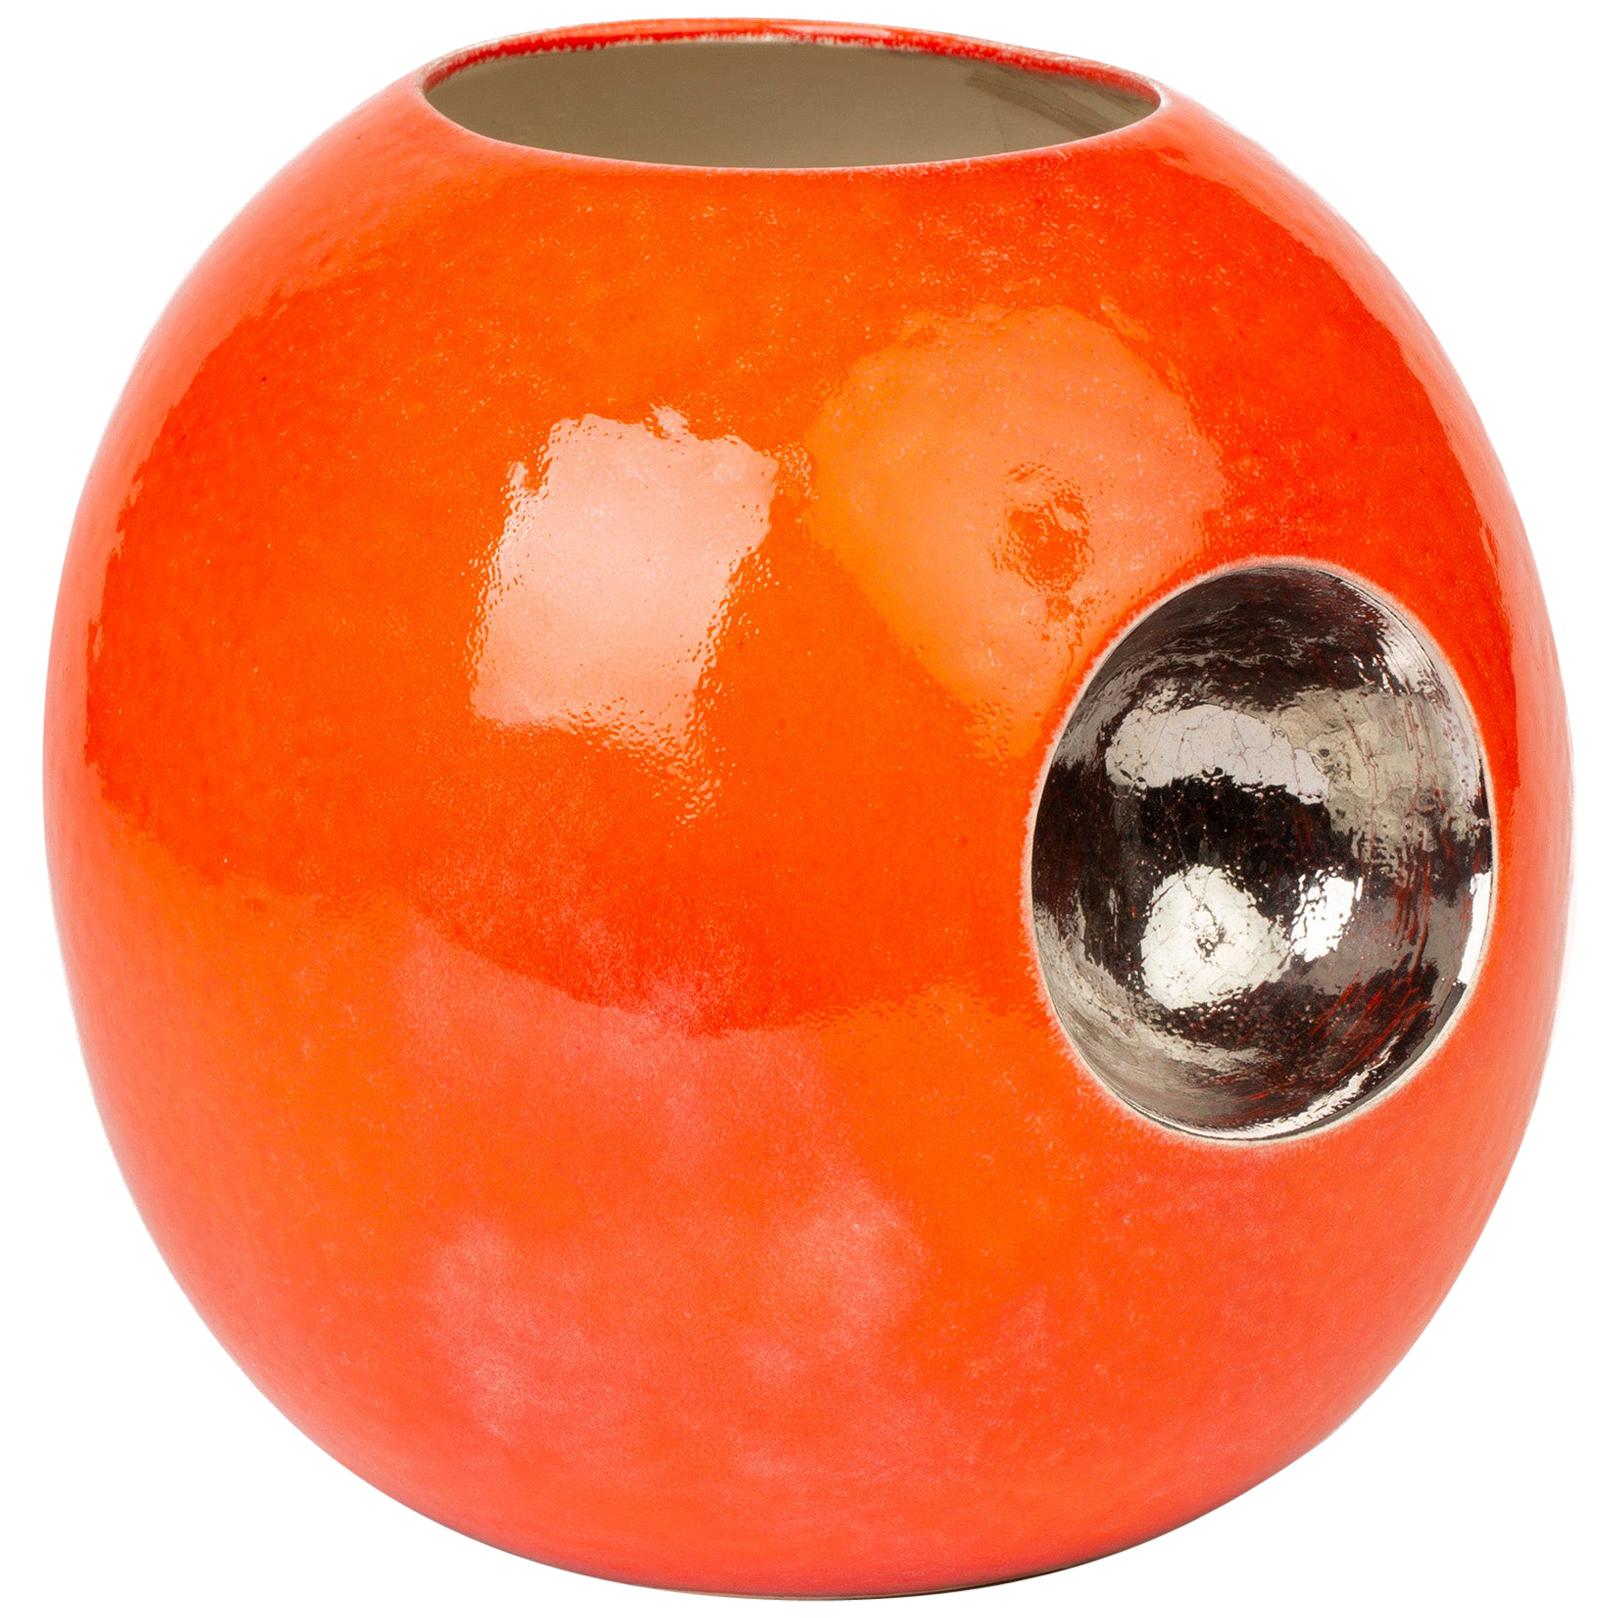 Stylish Contemporary Orange Glazed Globular Vase Signed Morgan Dated 2004